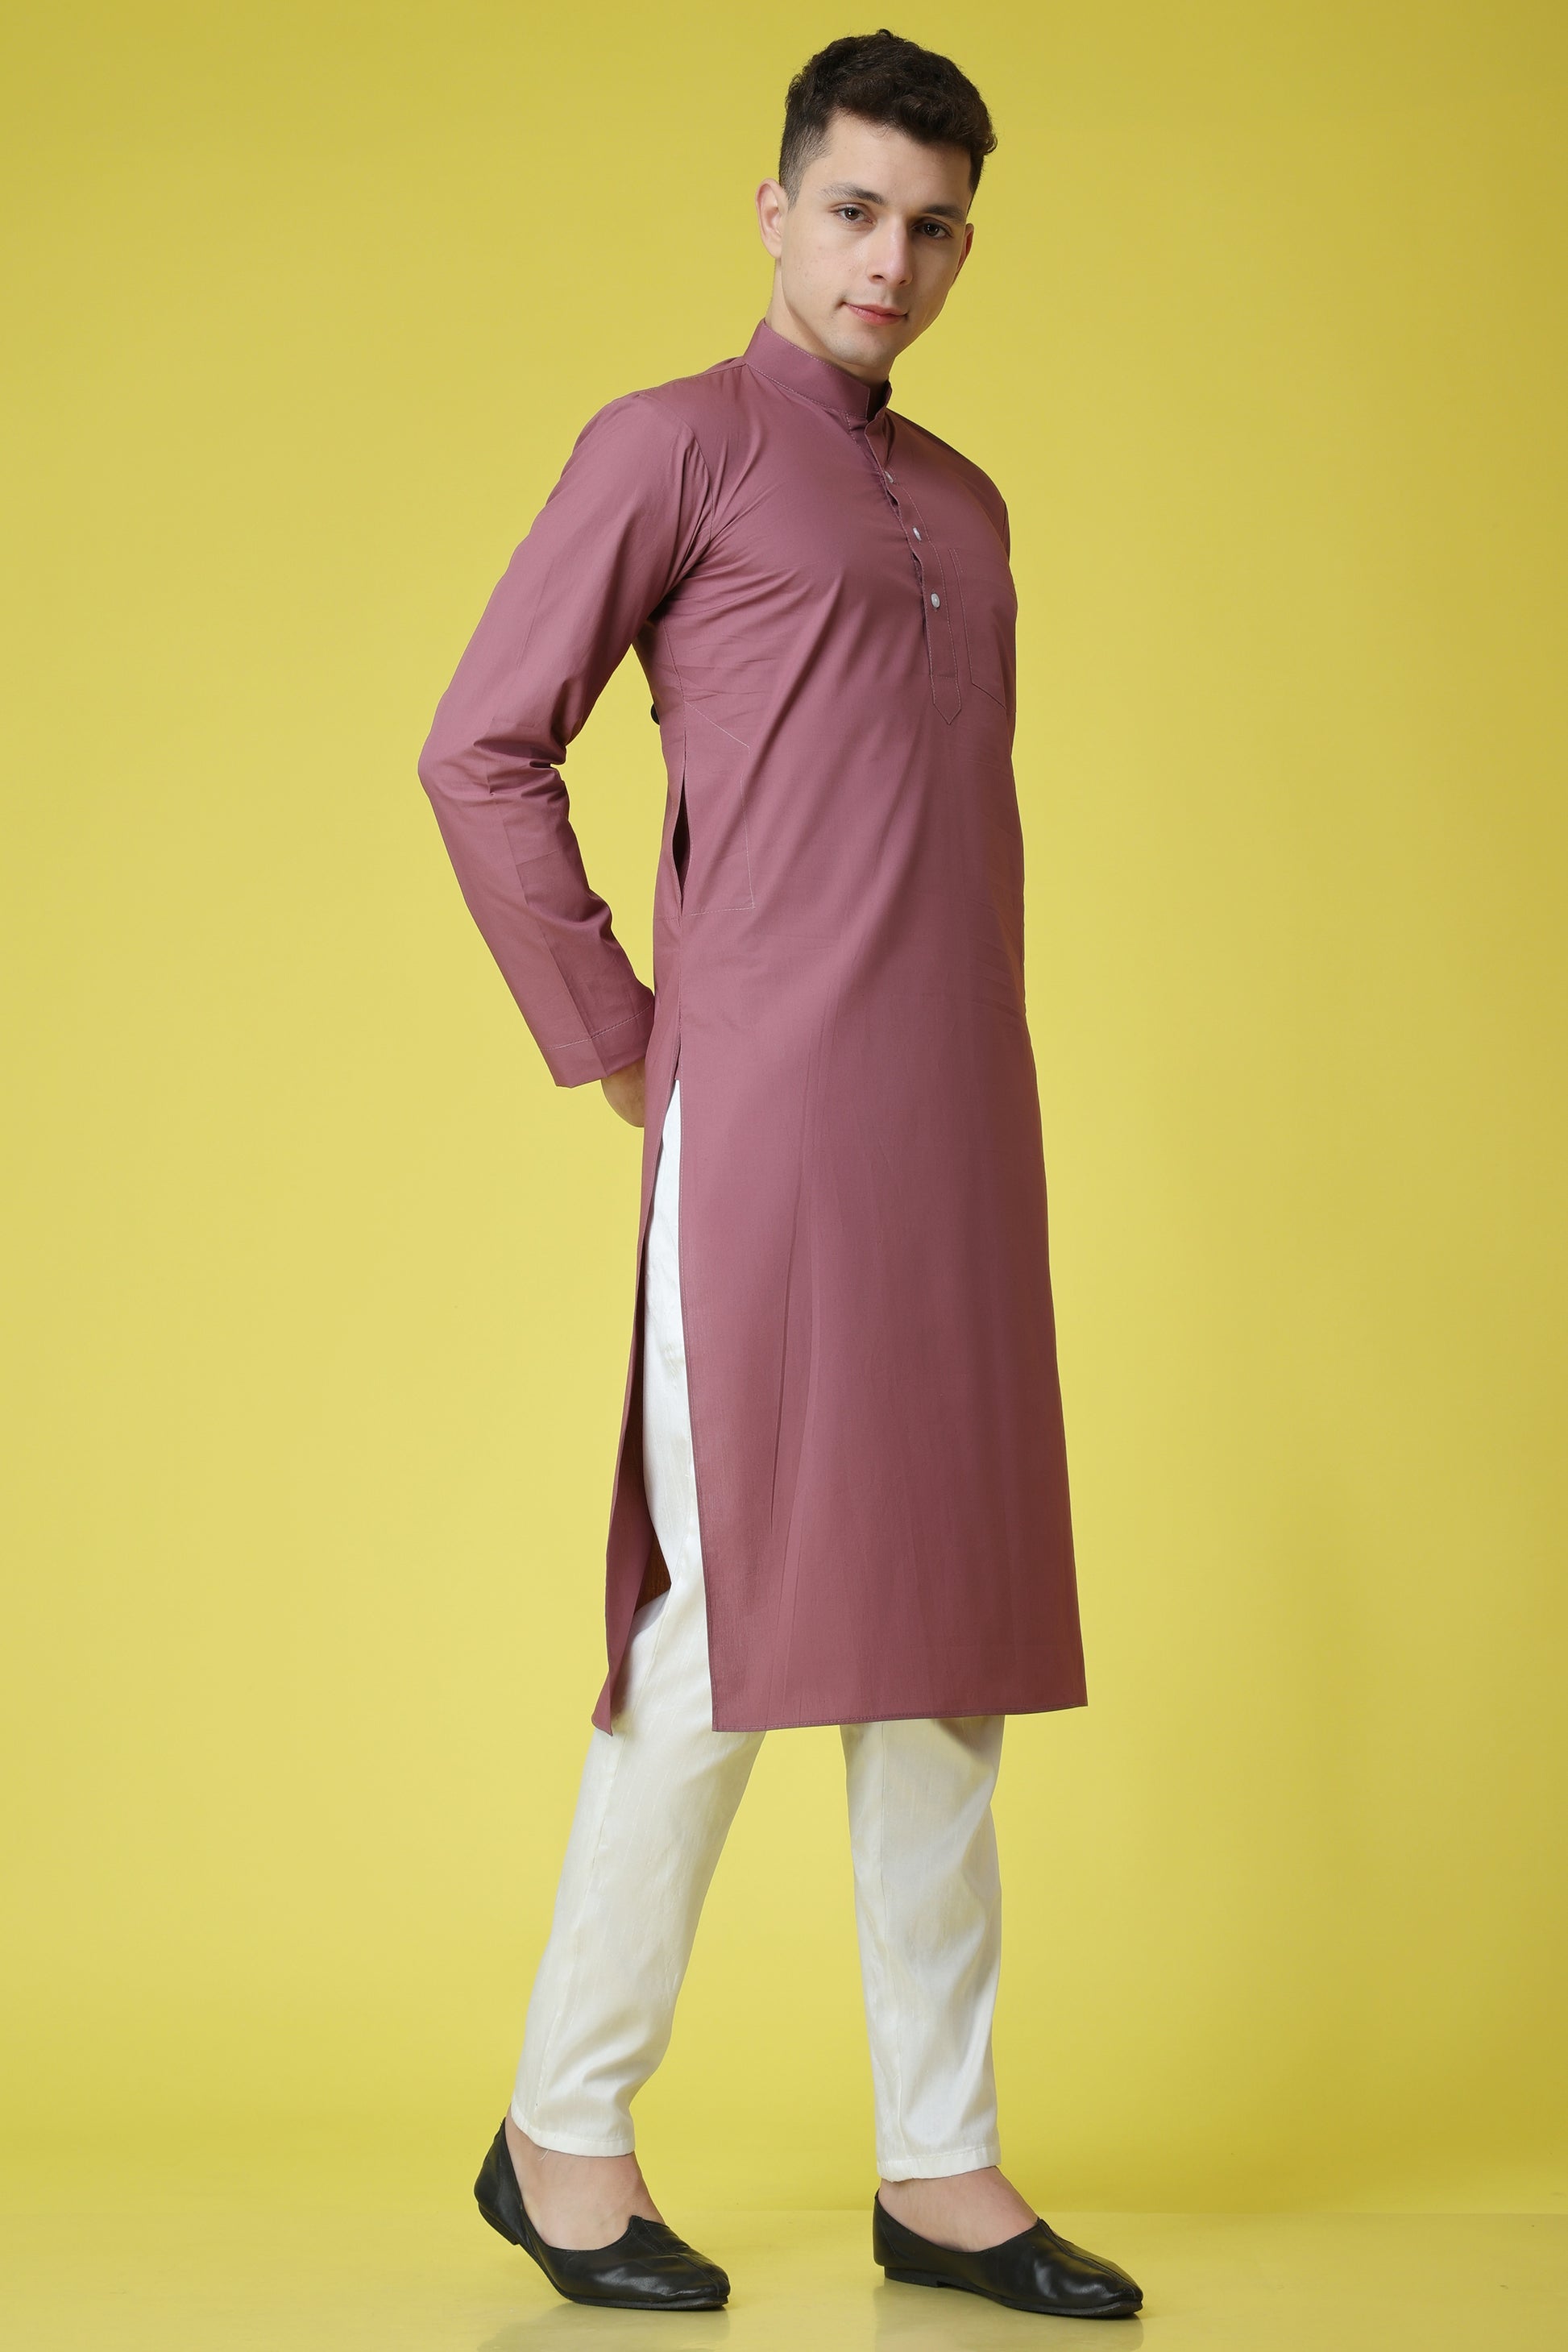 Men's Plus Size Lavish Lavender Cotton Kurta Pajama